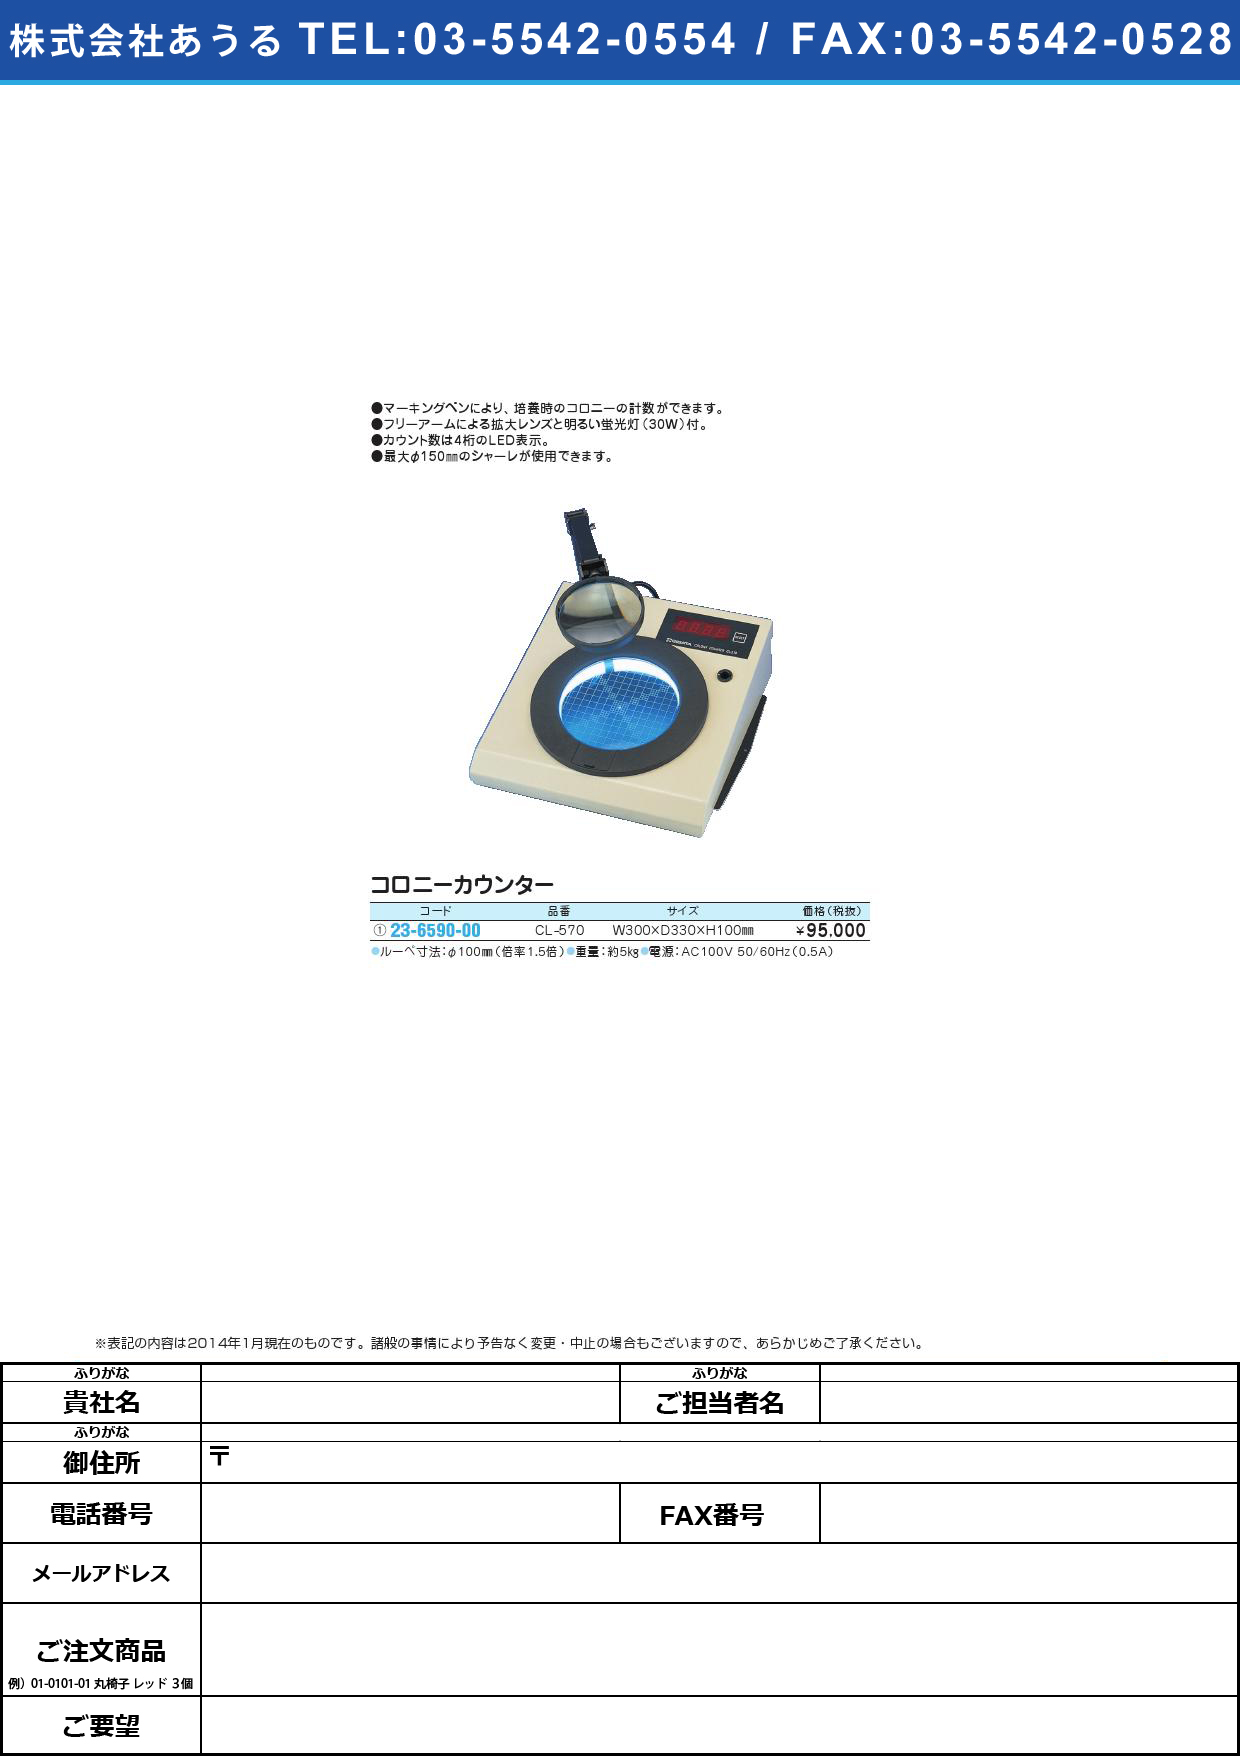 (23-6590-00)コロニーカウンター ｺﾛﾆｰｶｳﾝﾀｰ(23-6590-00)CL-570【1台単位】【2014年カタログ商品】